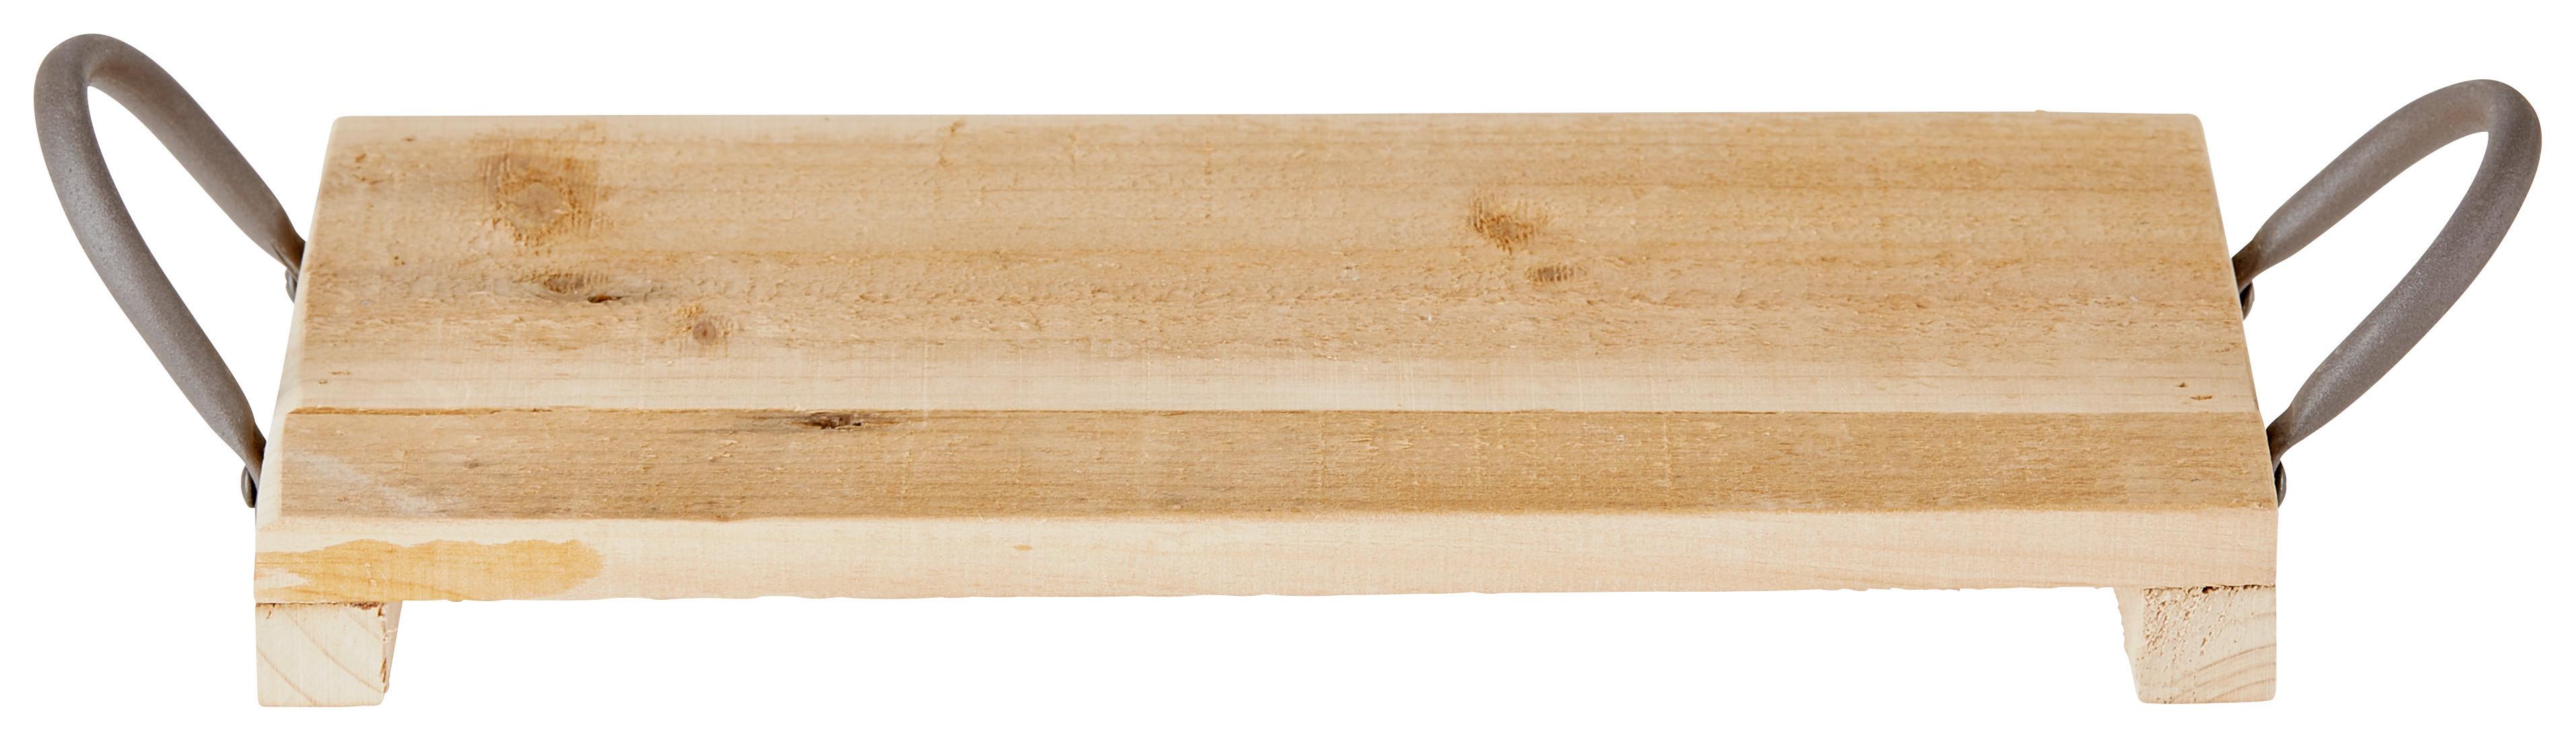 Bett-Tablett aus massivem Bambus-Holz